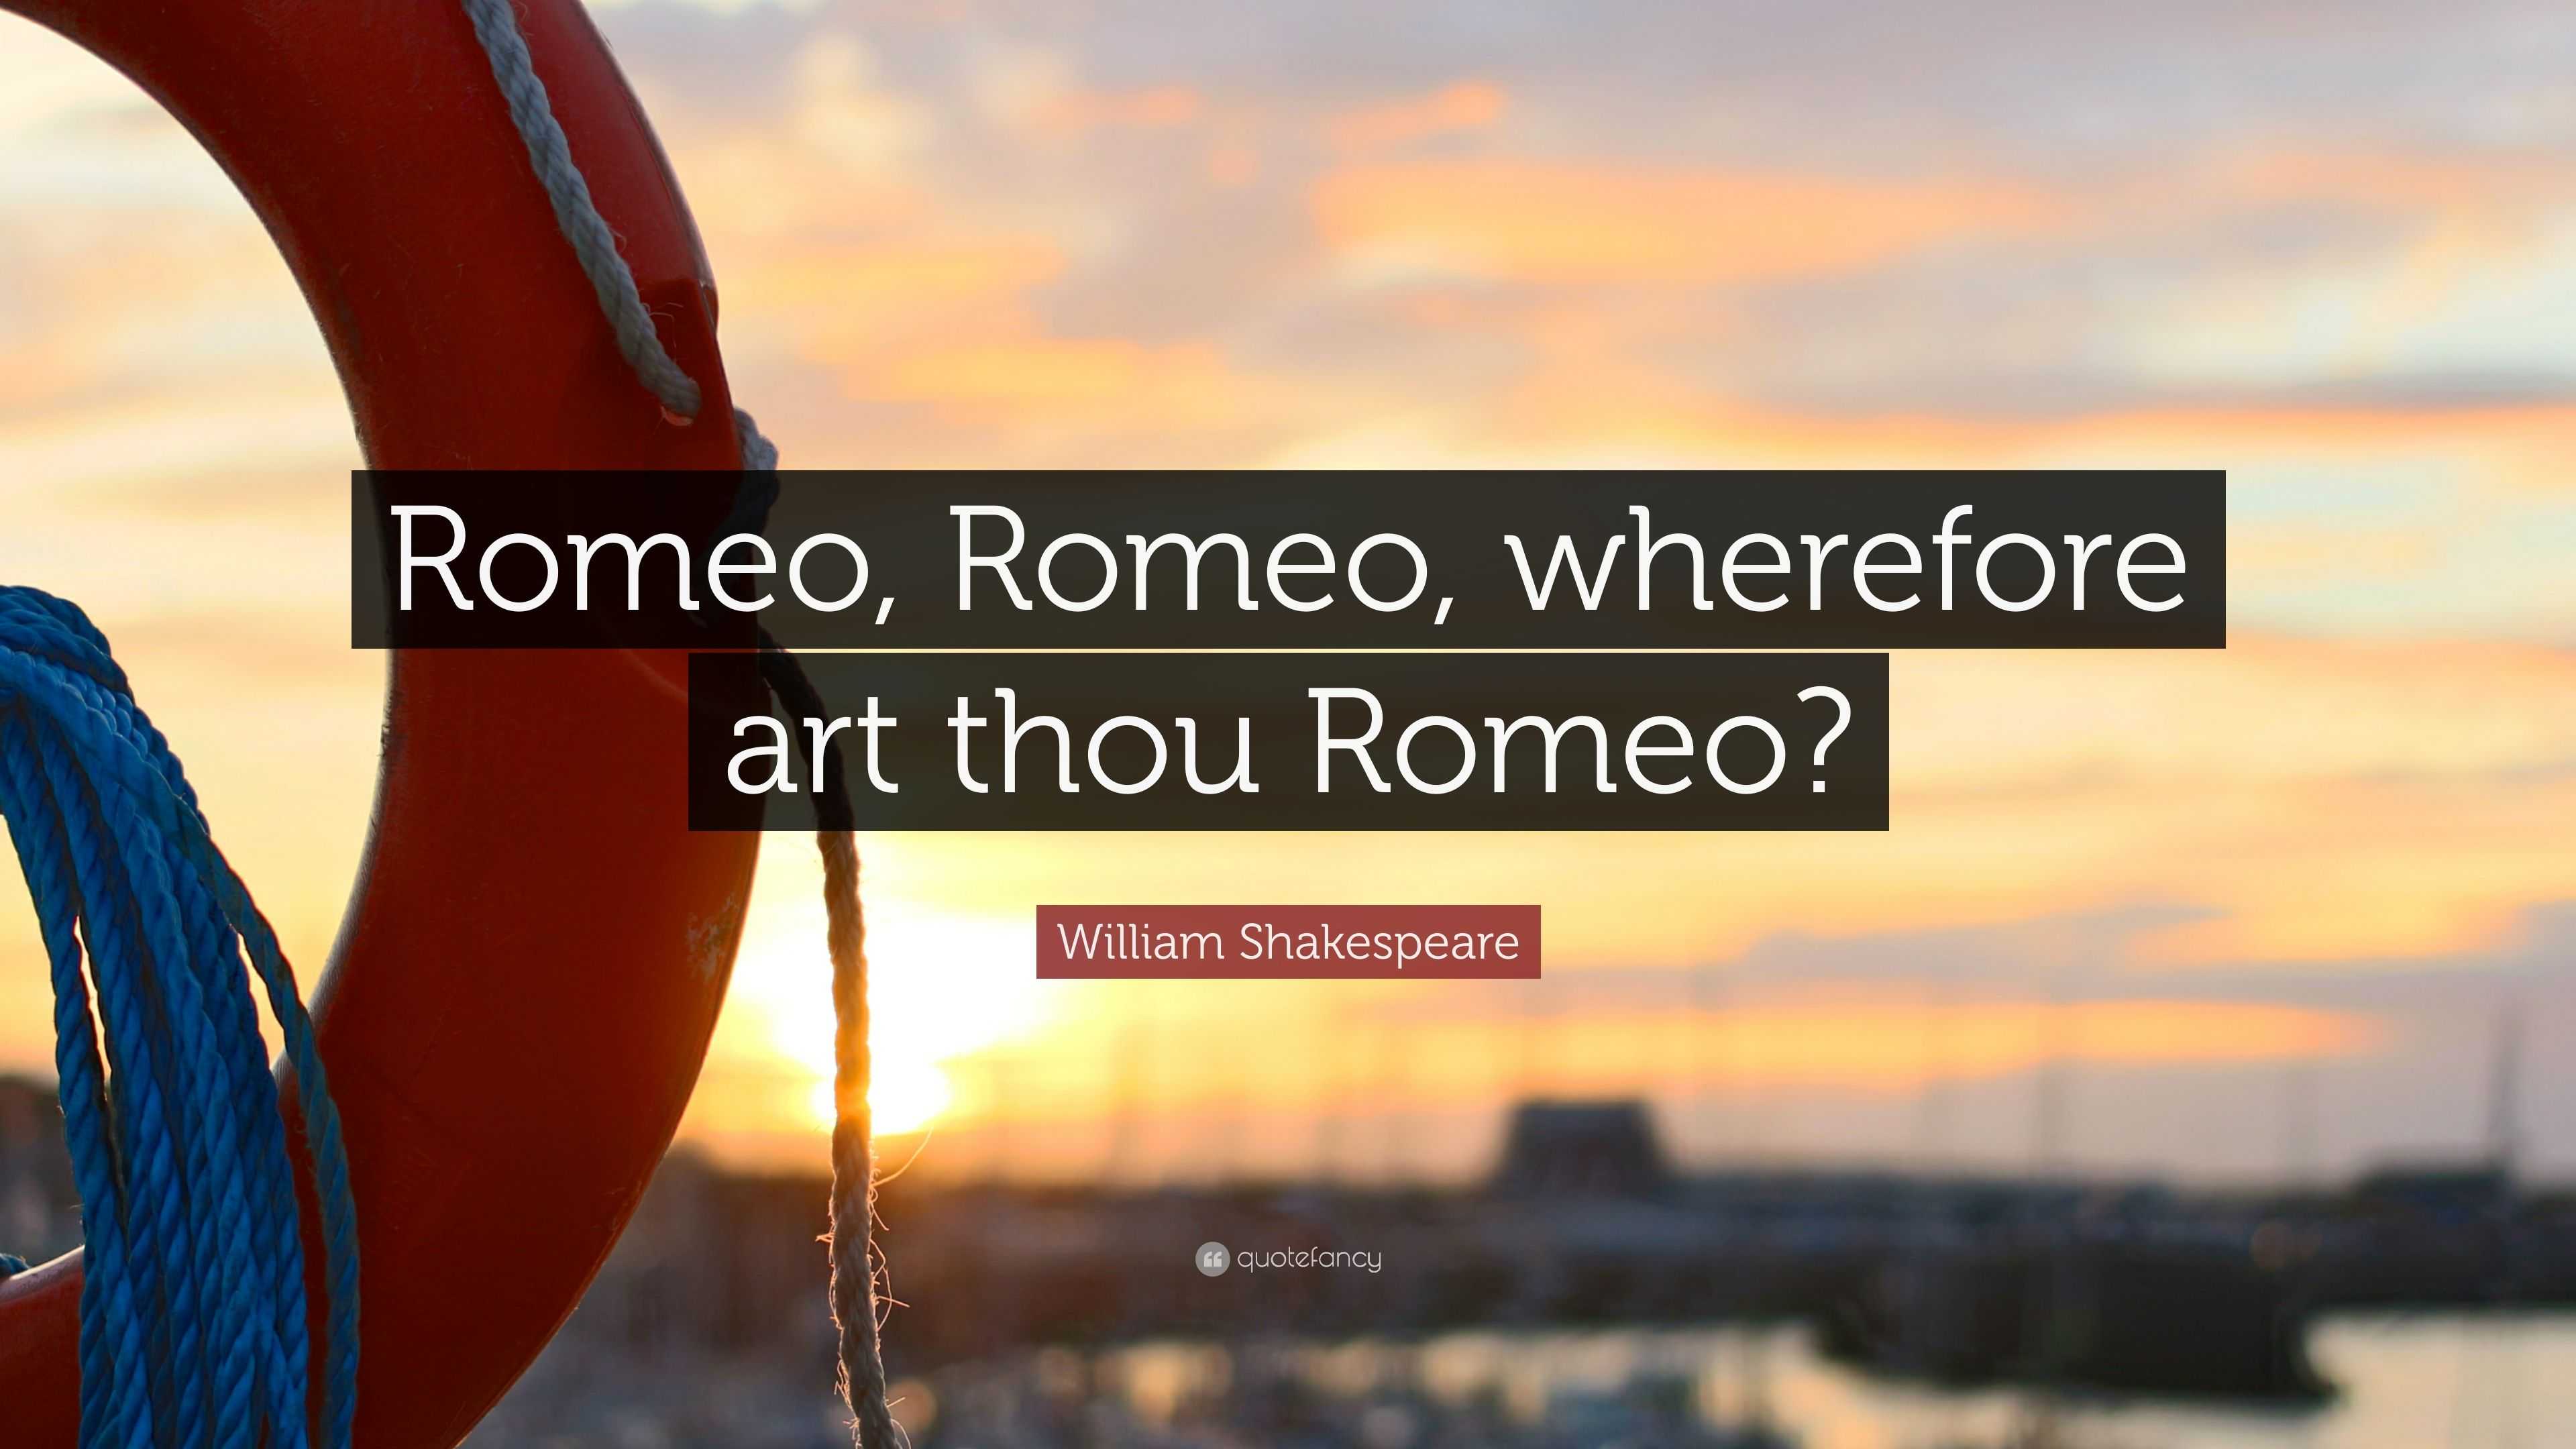 William Shakespeare Quote “romeo Romeo Wherefore Art Thou Romeo”